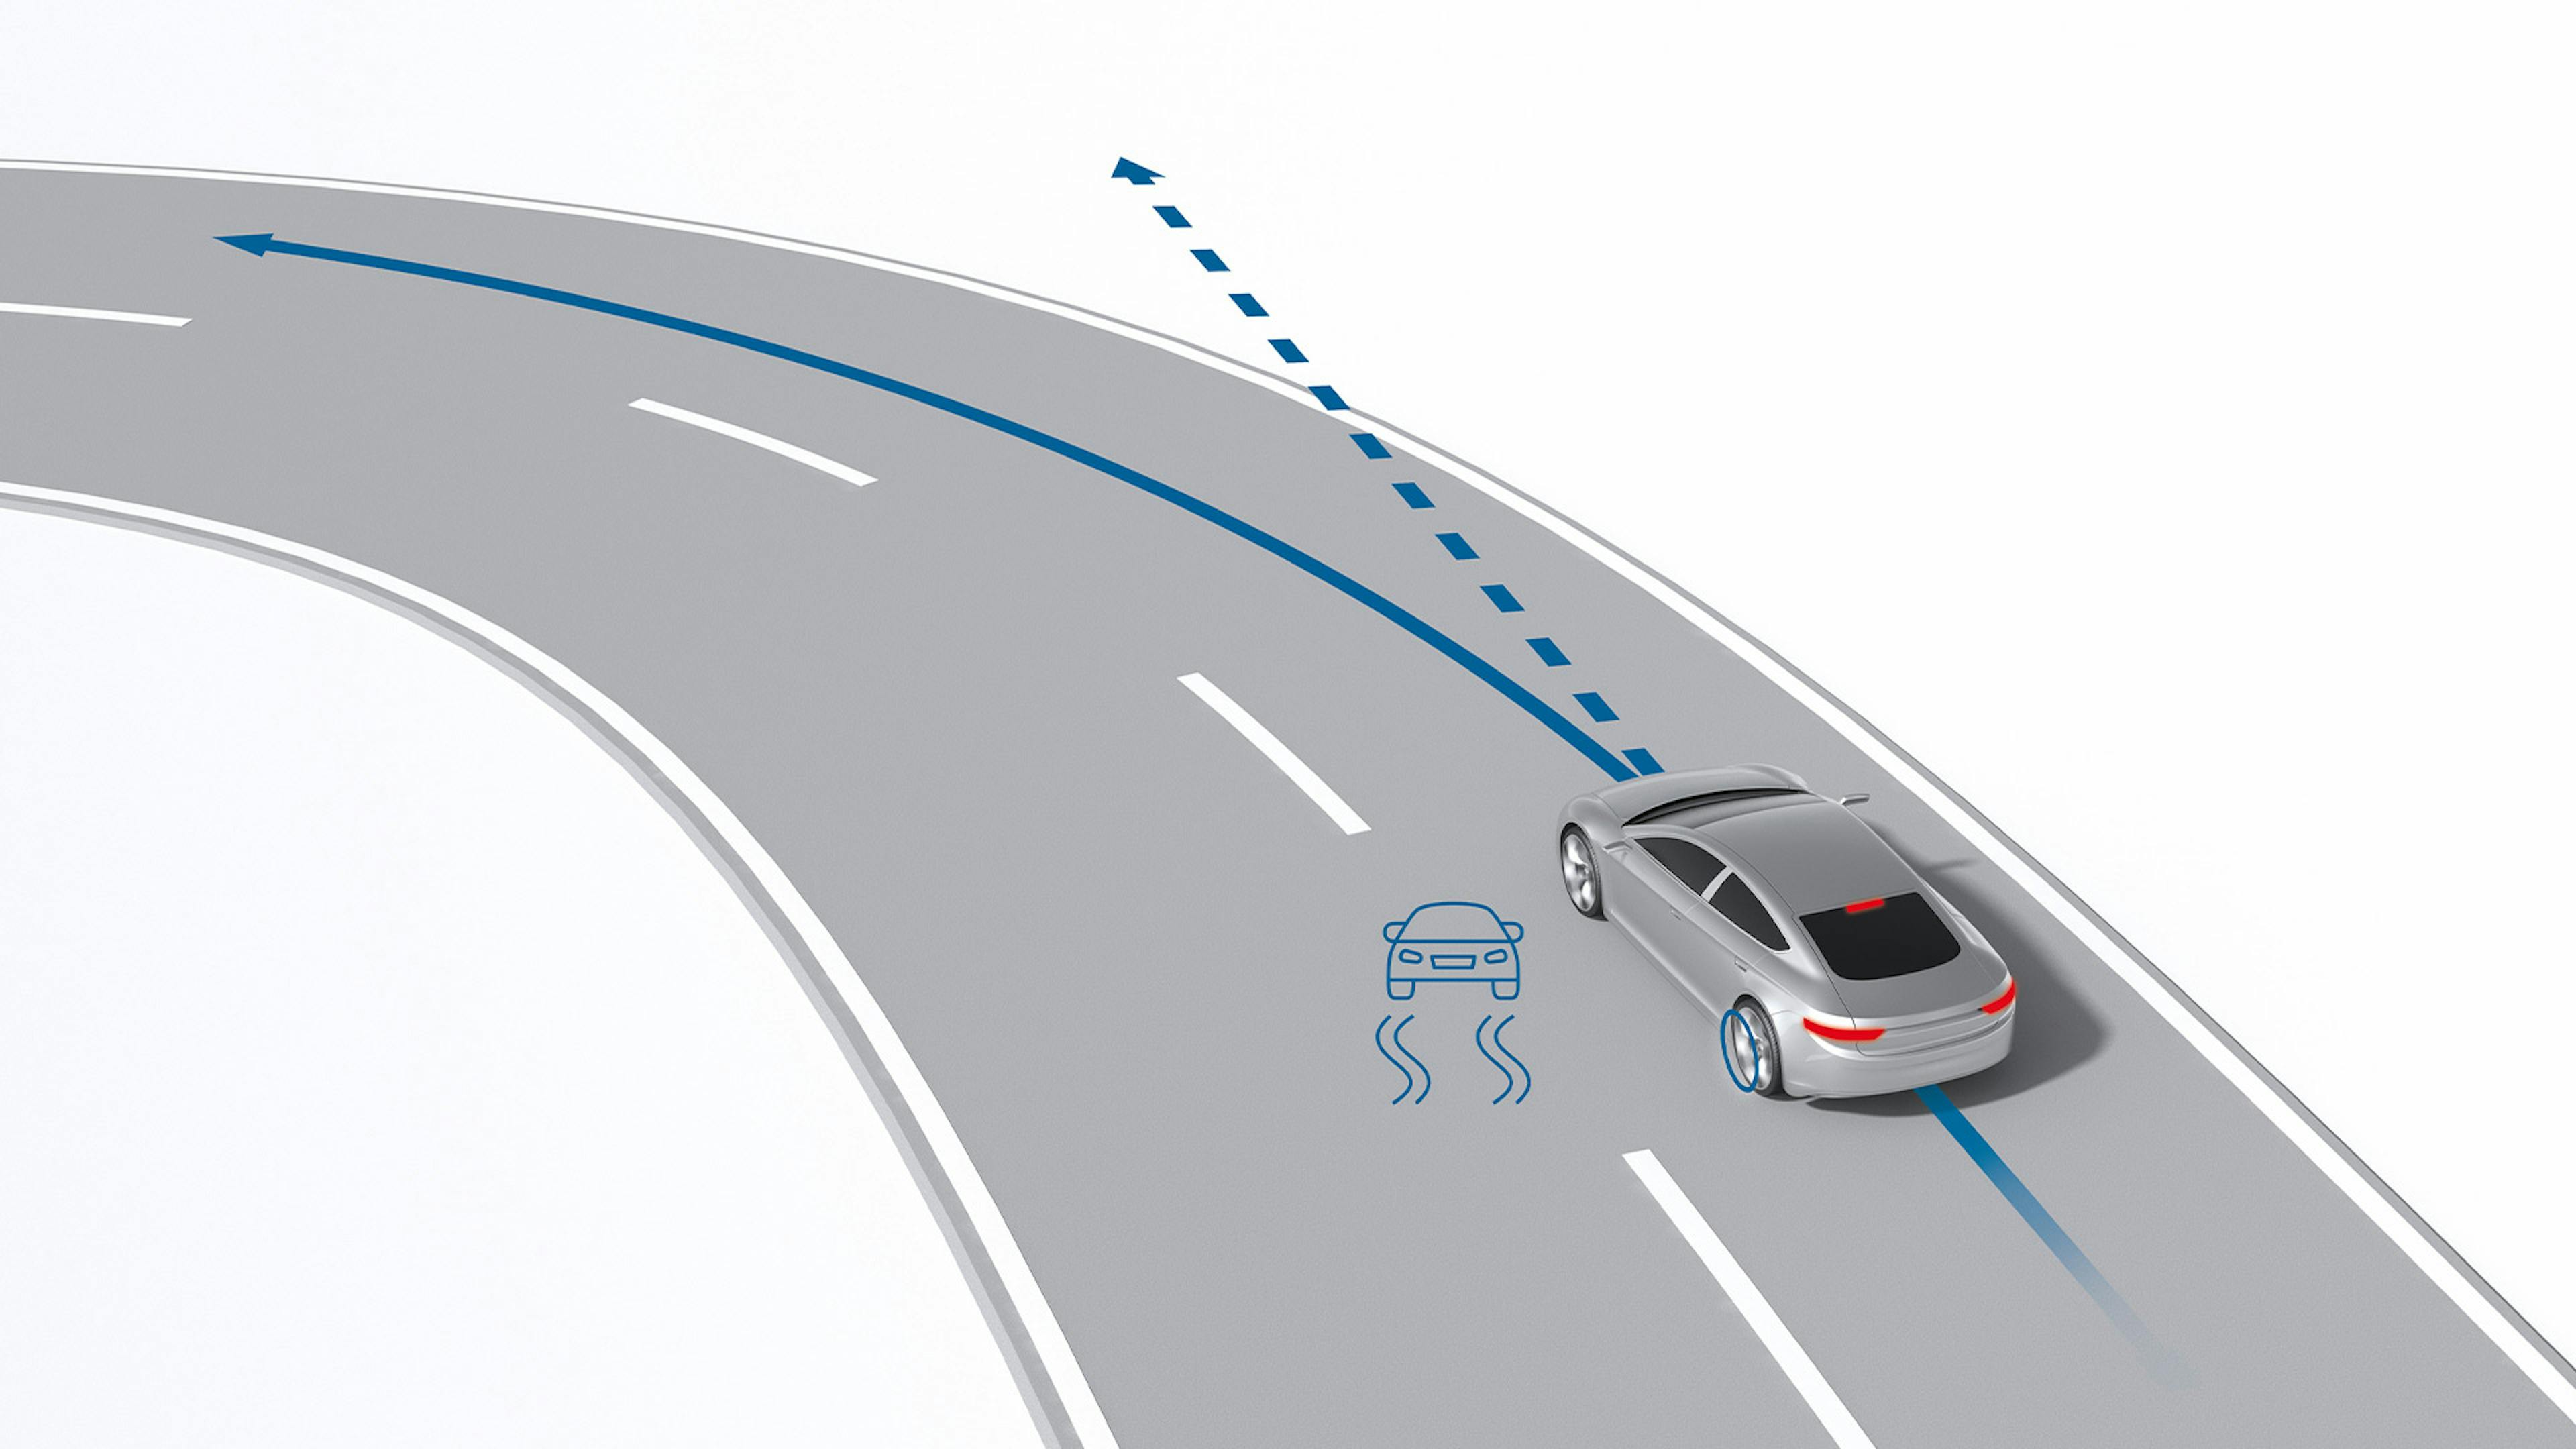 Ein silbernes Auto fährt auf eine Kurve zu. Eingezeichnet sind die gewünschte Fahrtrichtung sowie die Fahrtrichtung bei Untersteuern